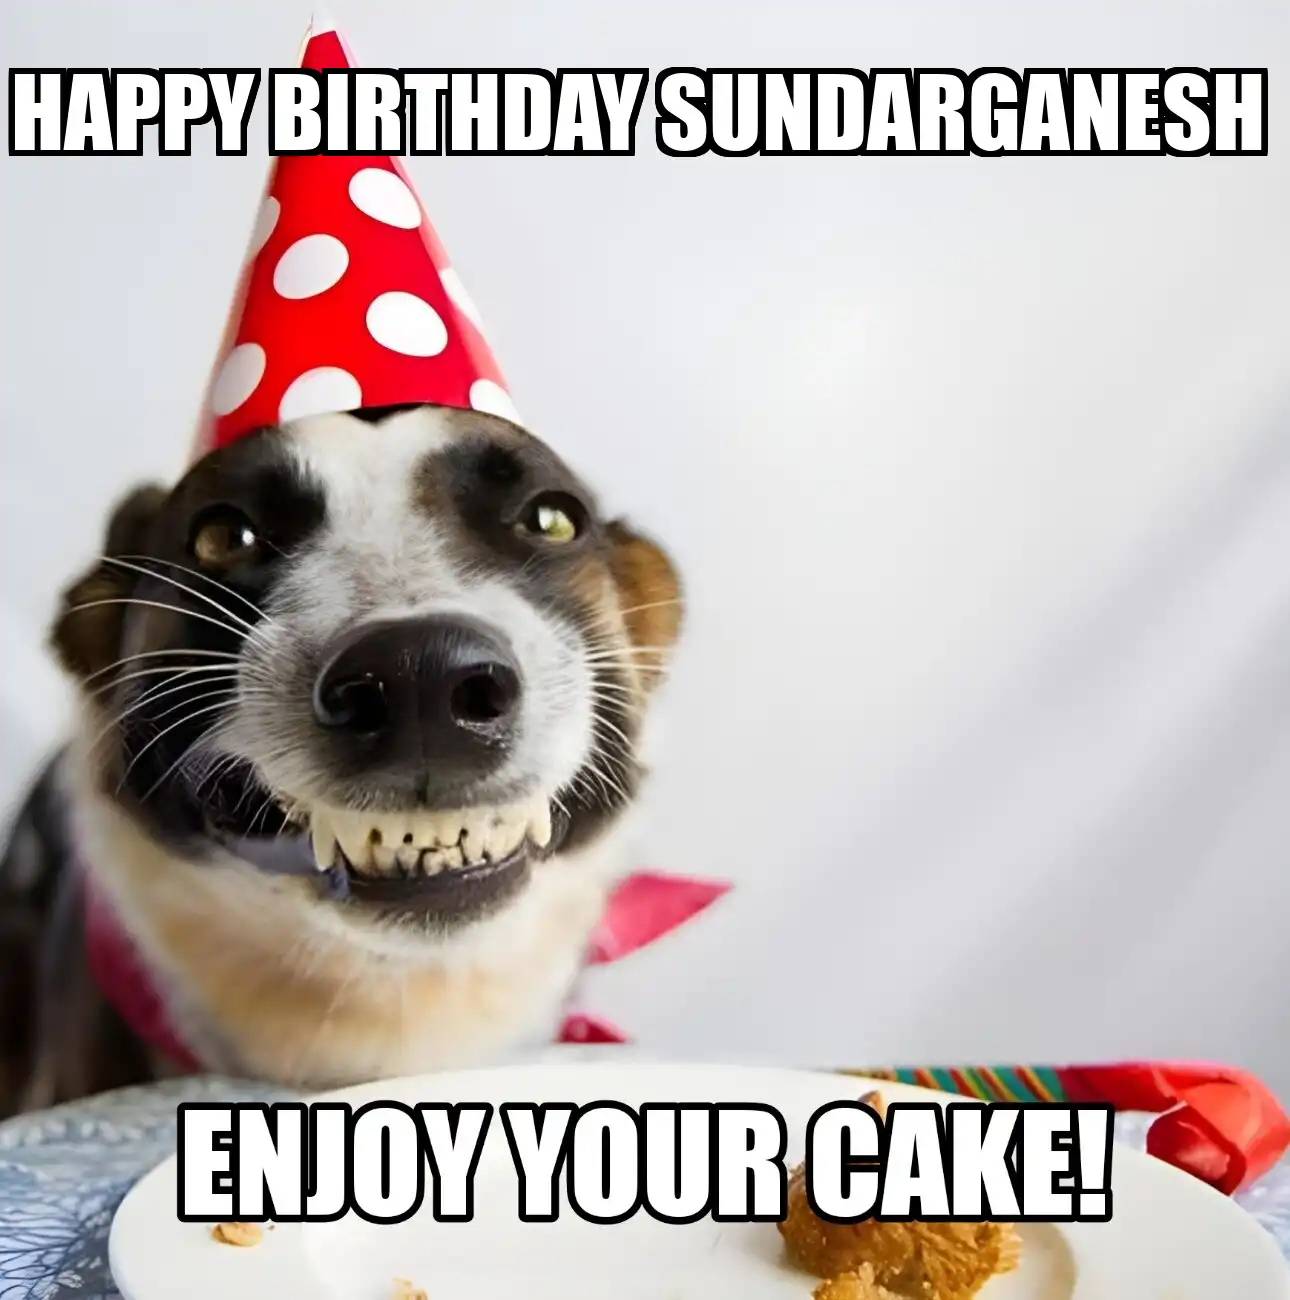 Happy Birthday Sundarganesh Enjoy Your Cake Dog Meme